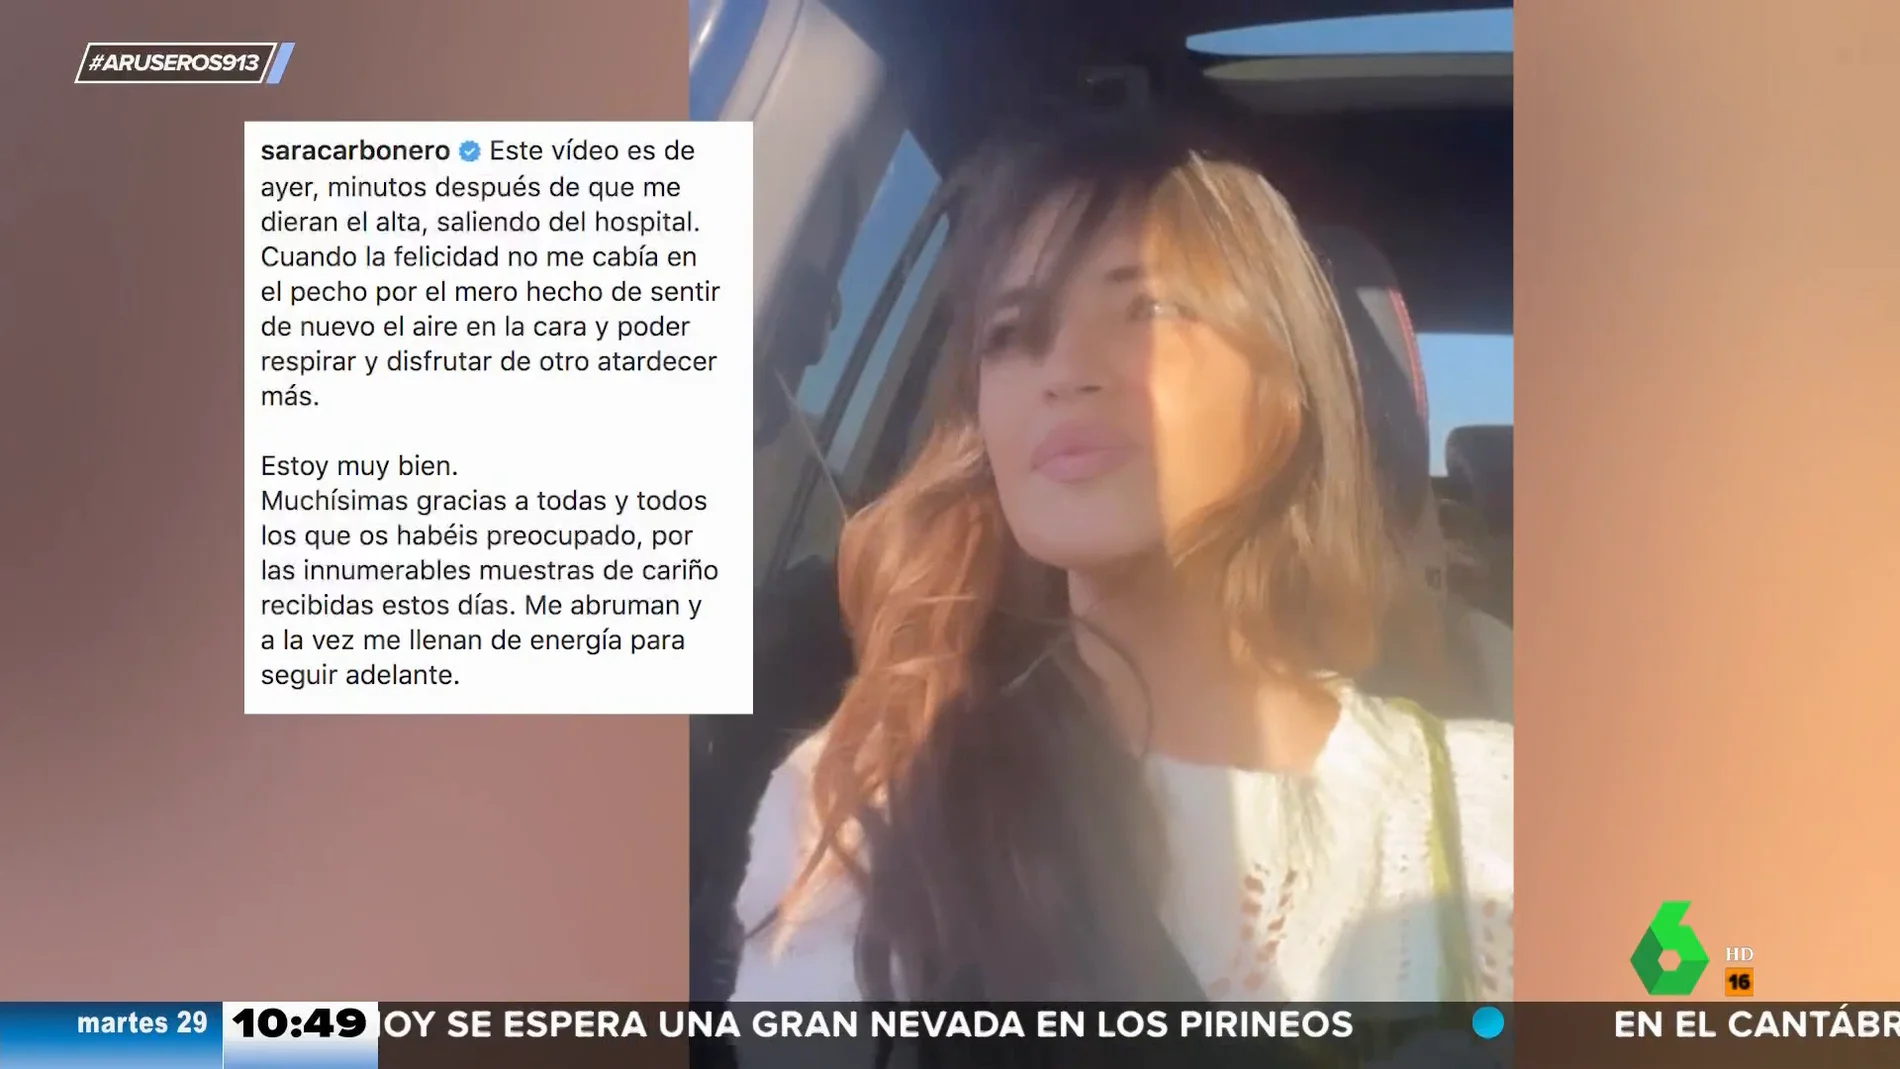 El emotivo vídeo de Sara Carbonero tras salir del hospital con el que agradece el cariño recibido